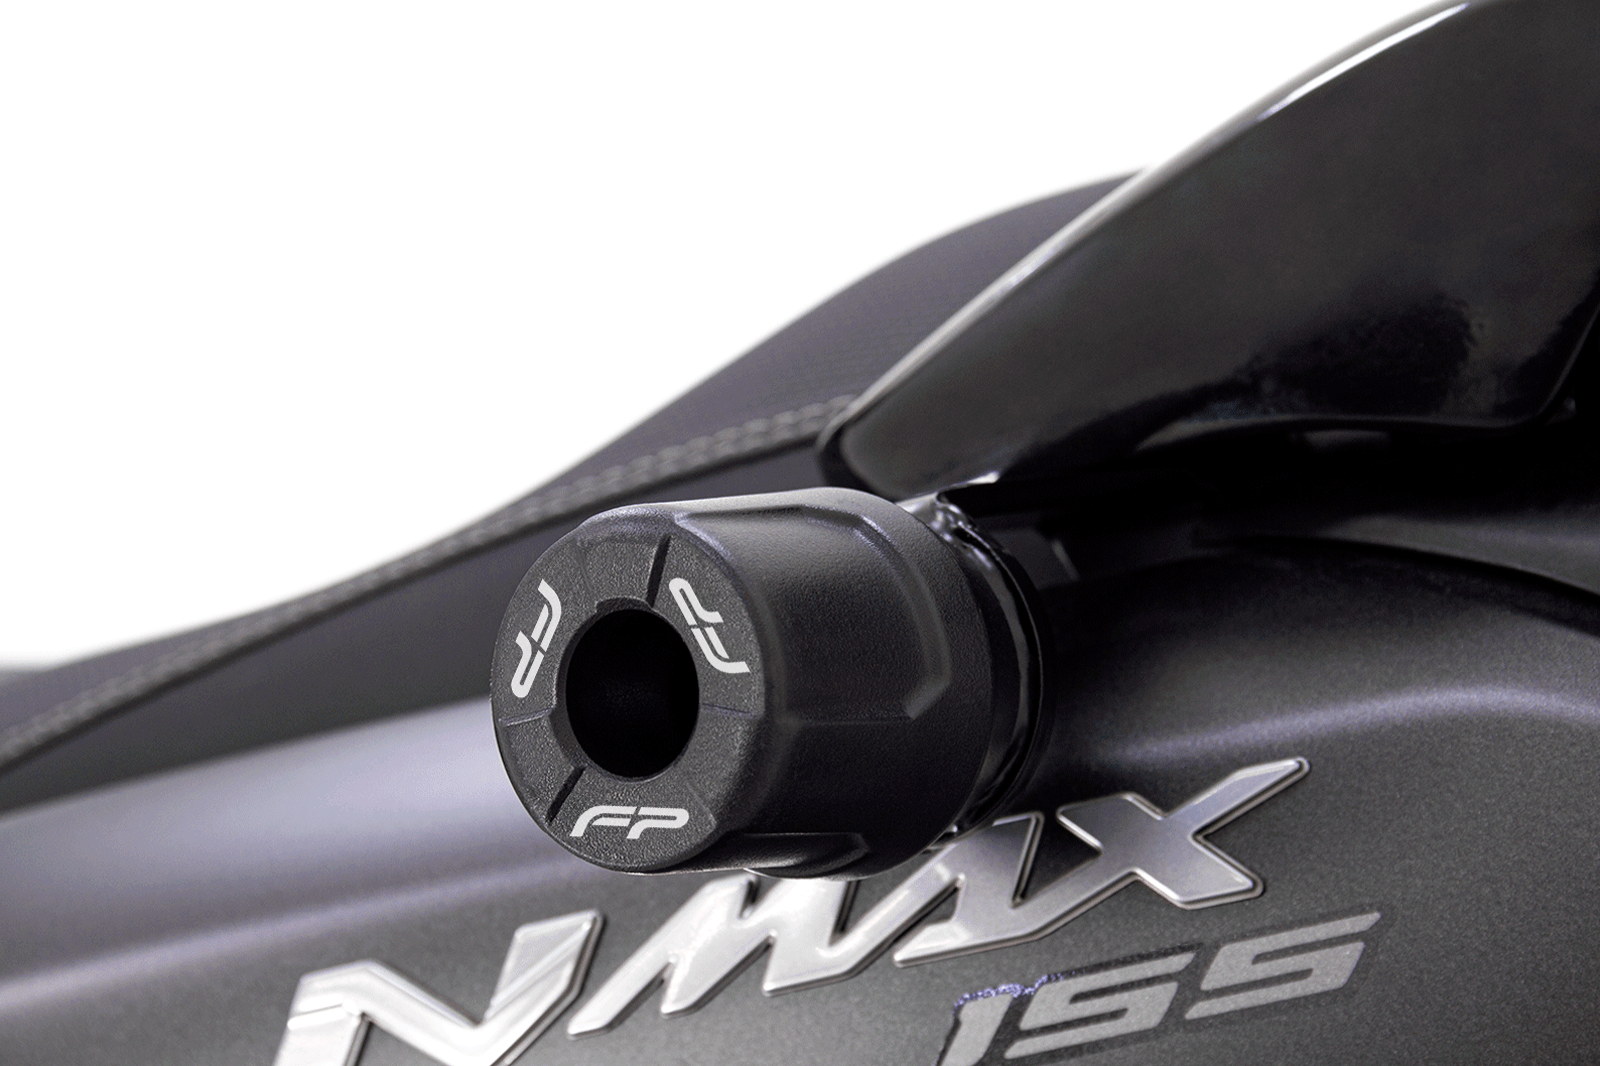 Protector Mofle Yamaha Aerox 155 / NMAX Connected